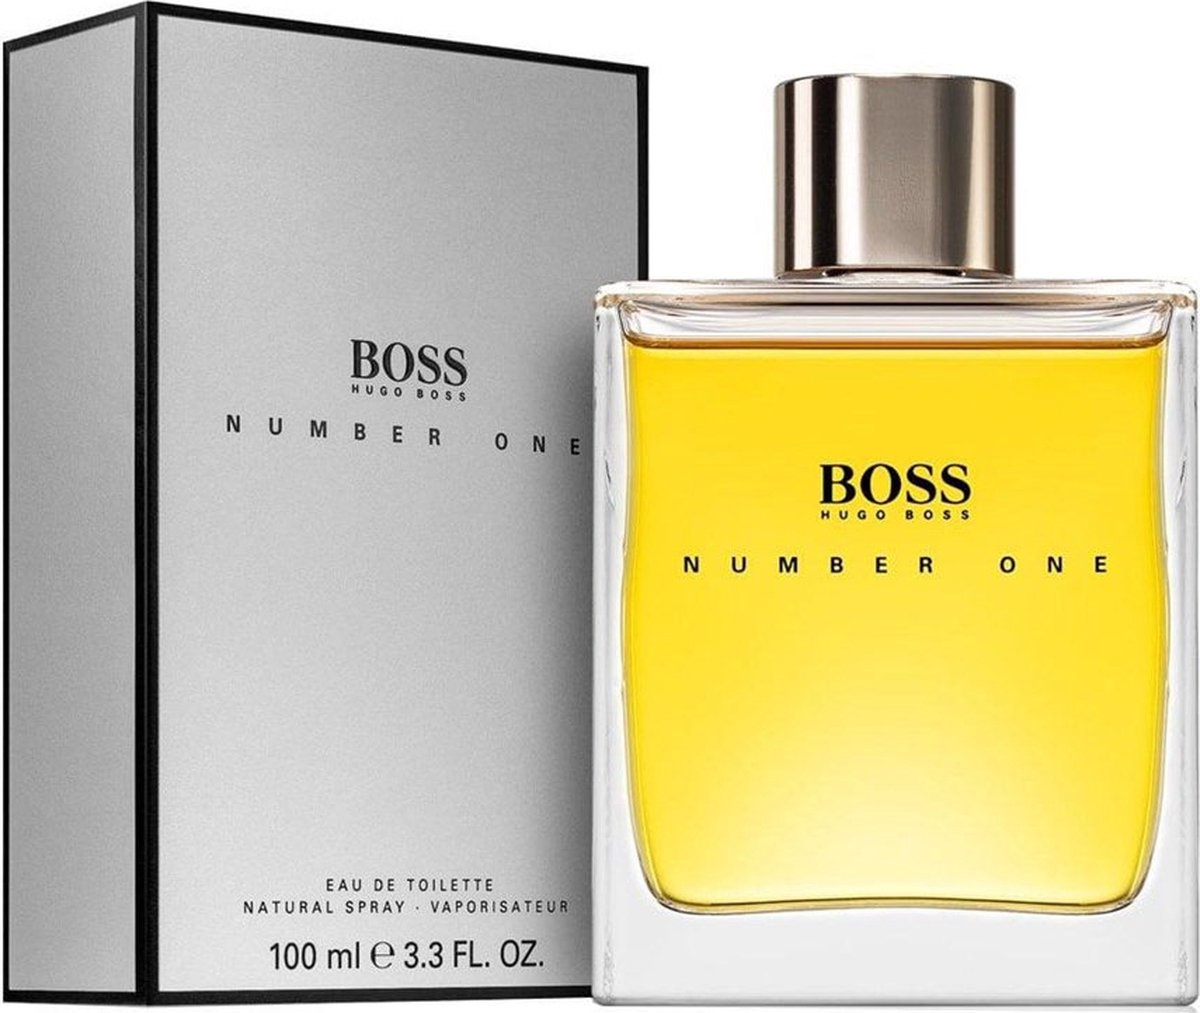 Hugo Boss Boss Number One 100ml - Nouvelle édition - Eau de toilette - Parfum pour homme